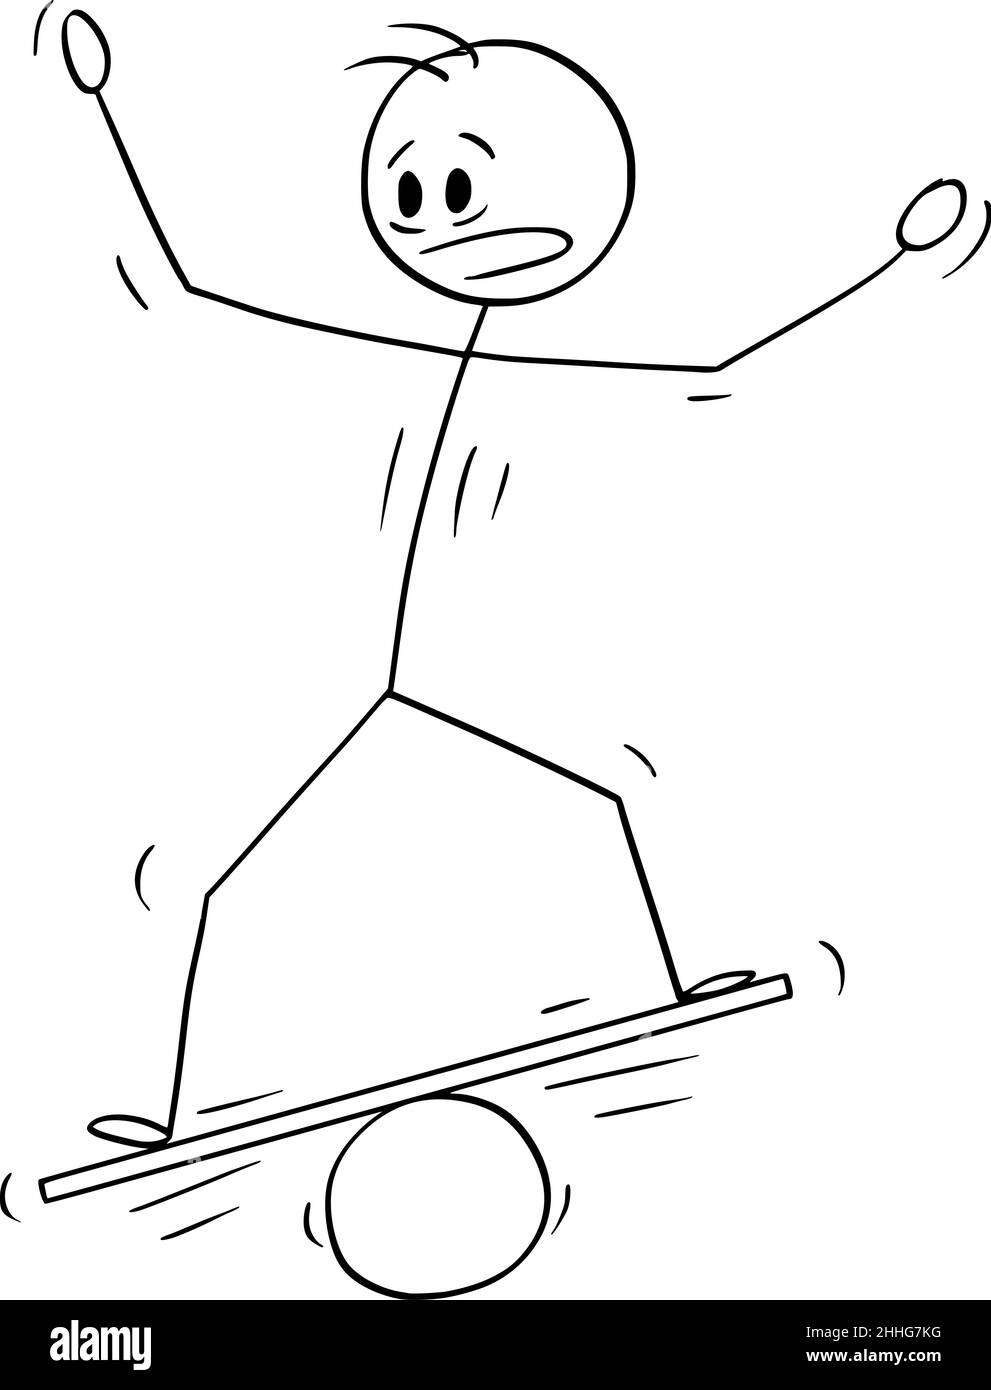 Equilibrio de la persona, ilustración de la figura del cartoon del vector  Imagen Vector de stock - Alamy